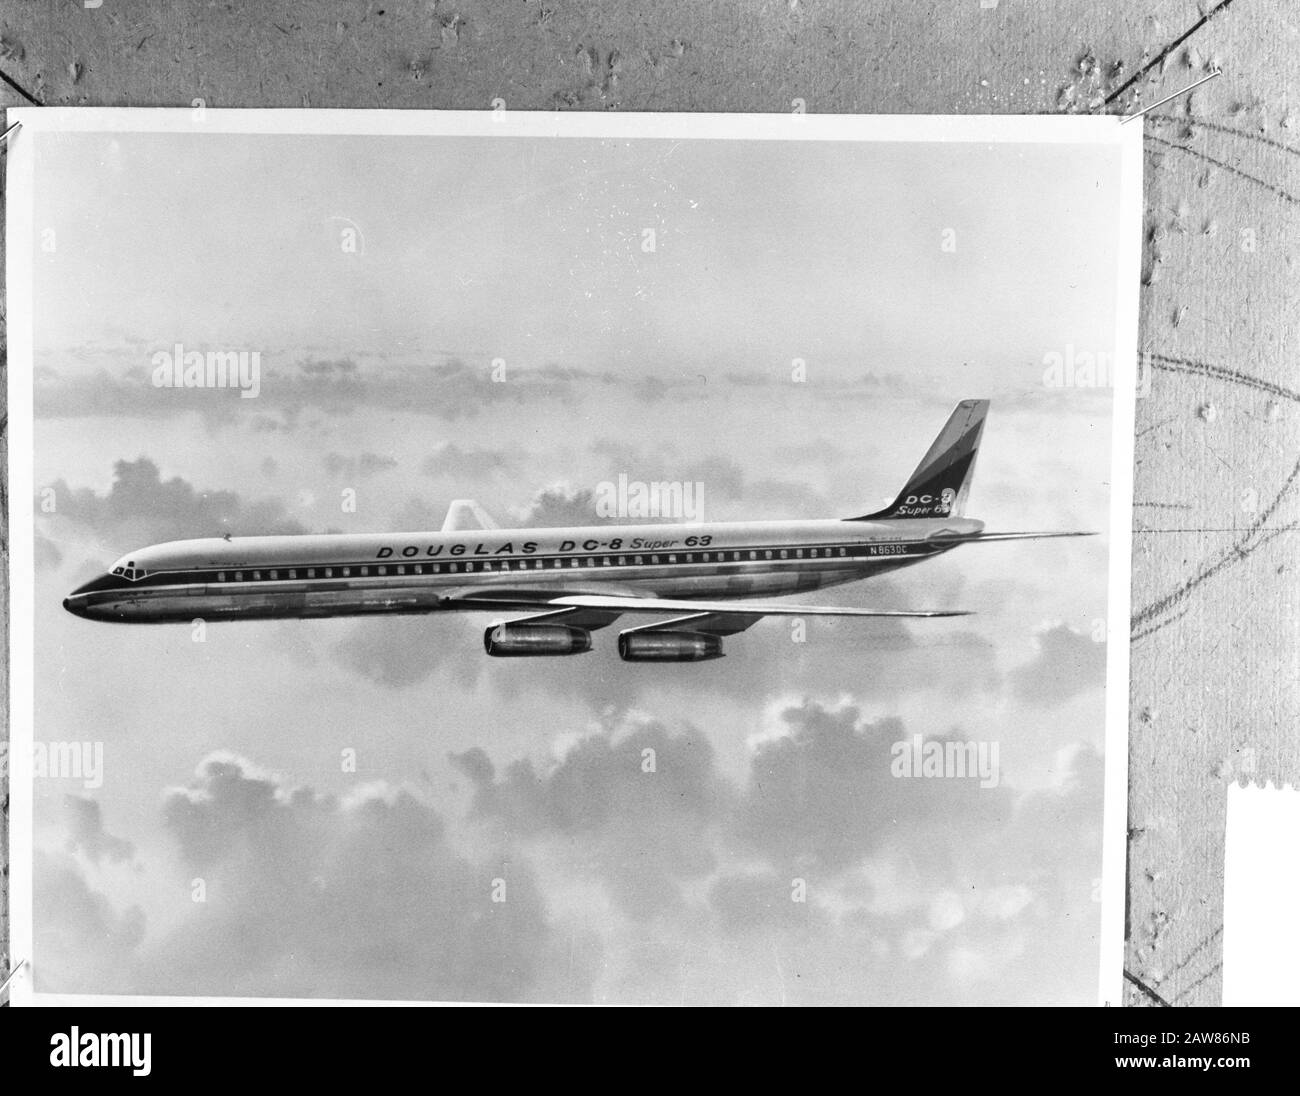 Nouvel aéronef pour KLM Douglas DC 8 Super 63 Date : 14 décembre 1965 mots clés : Aviation, aéronef Nom de l'établissement : KLM Banque D'Images